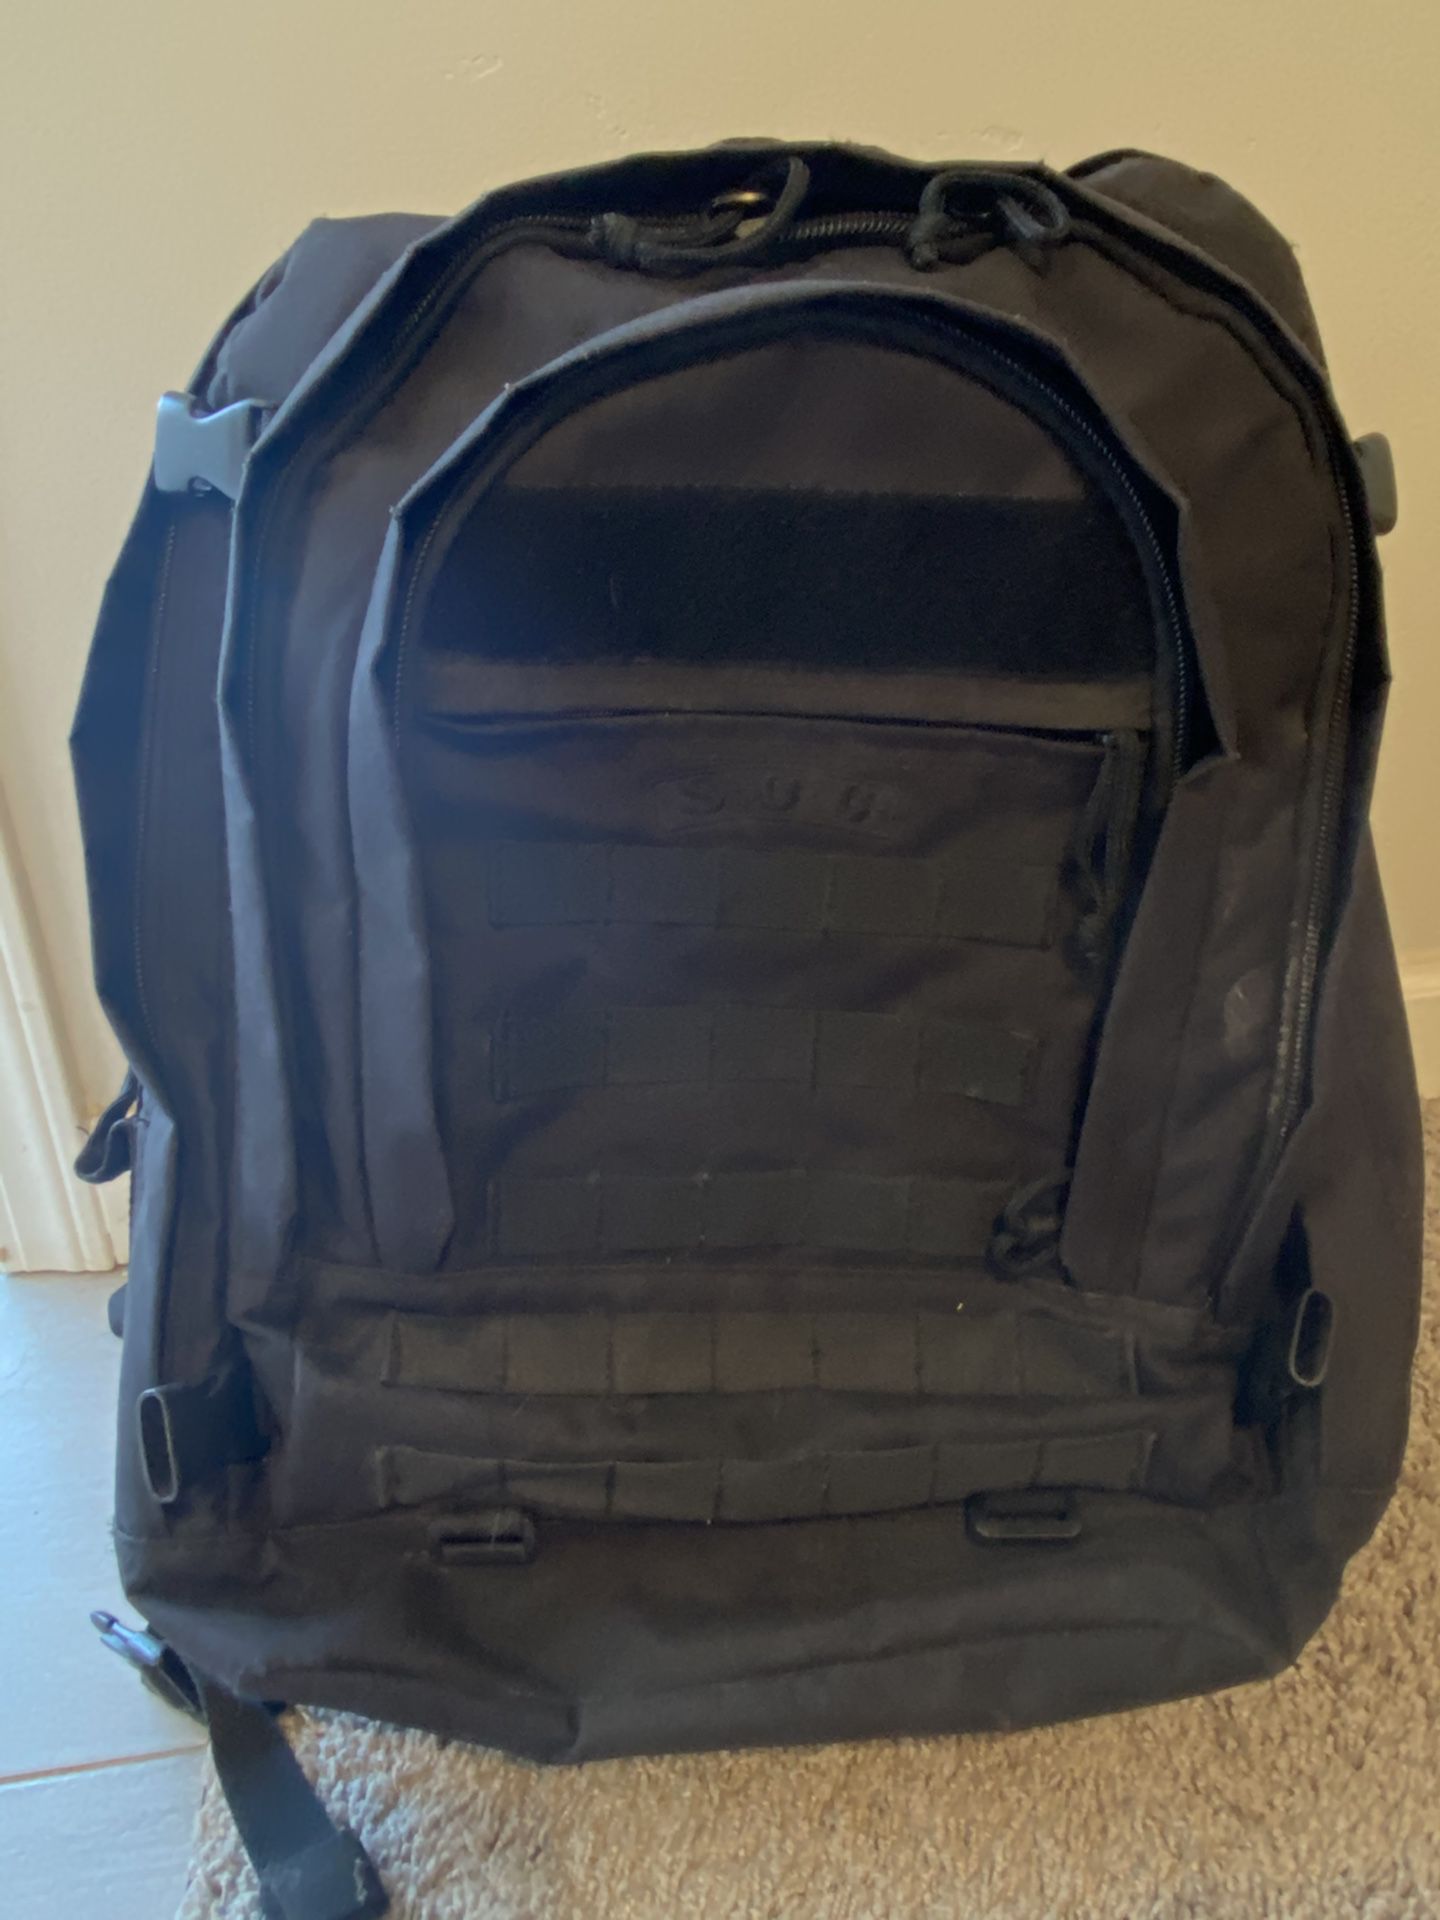 Sandpiper of California Bugout Backpack (Black)